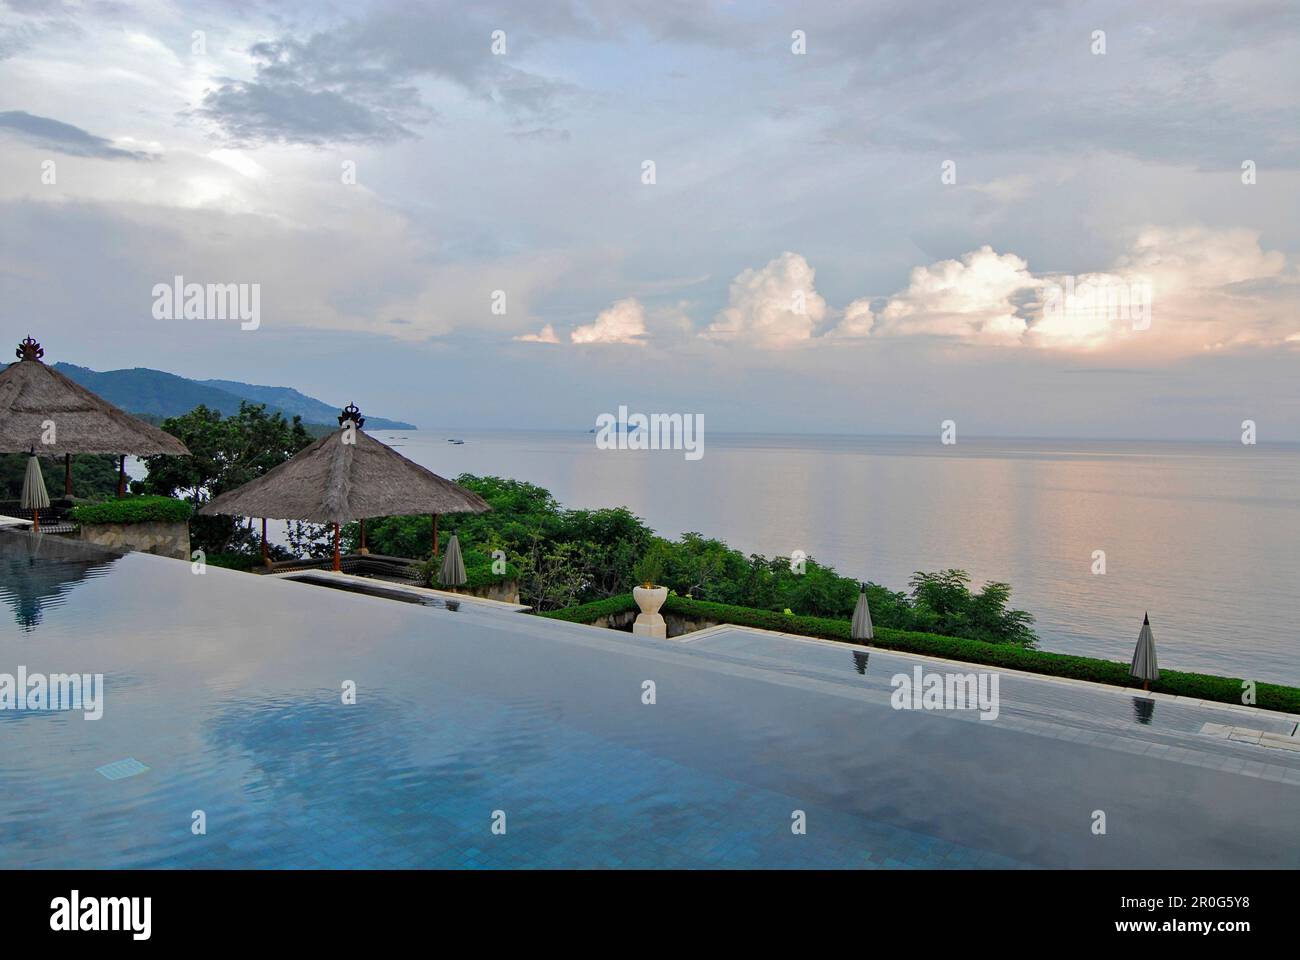 La piscina a sfioro deserta al Resort Amankila sotto il cielo nuvoloso, Candi Dasa, Bali orientale, Indonesia, Asia Foto Stock